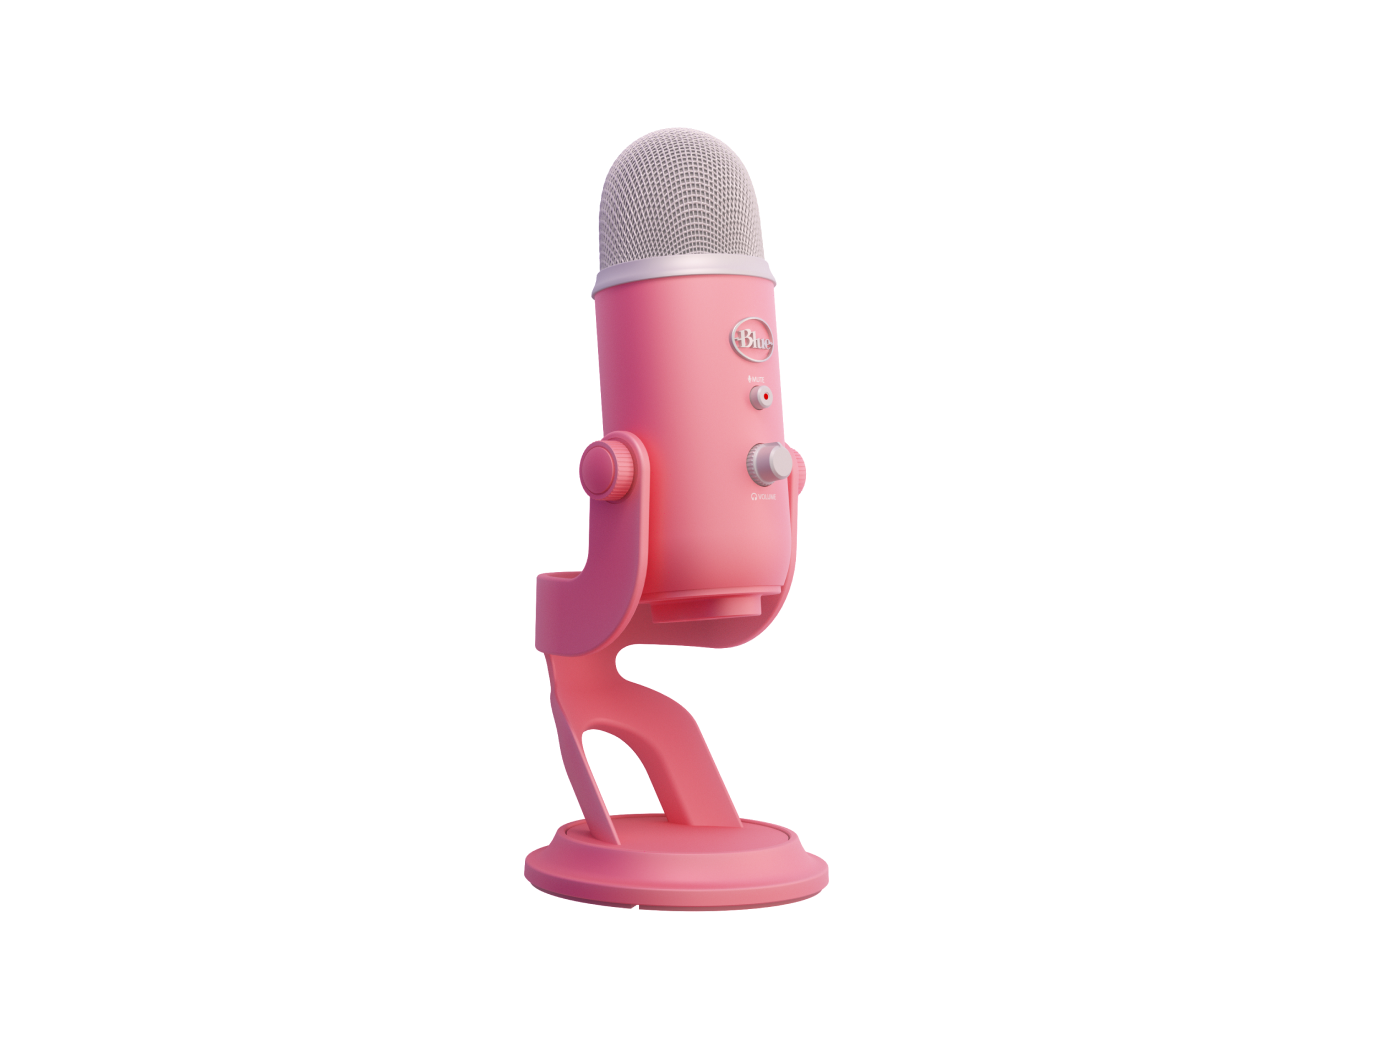 YETI FÜR DIE AURORA COLLECTION Premium-USB-Mikrofon mit mehreren Richtcharakteristiken und Blue VO!CE - Pink Dawn